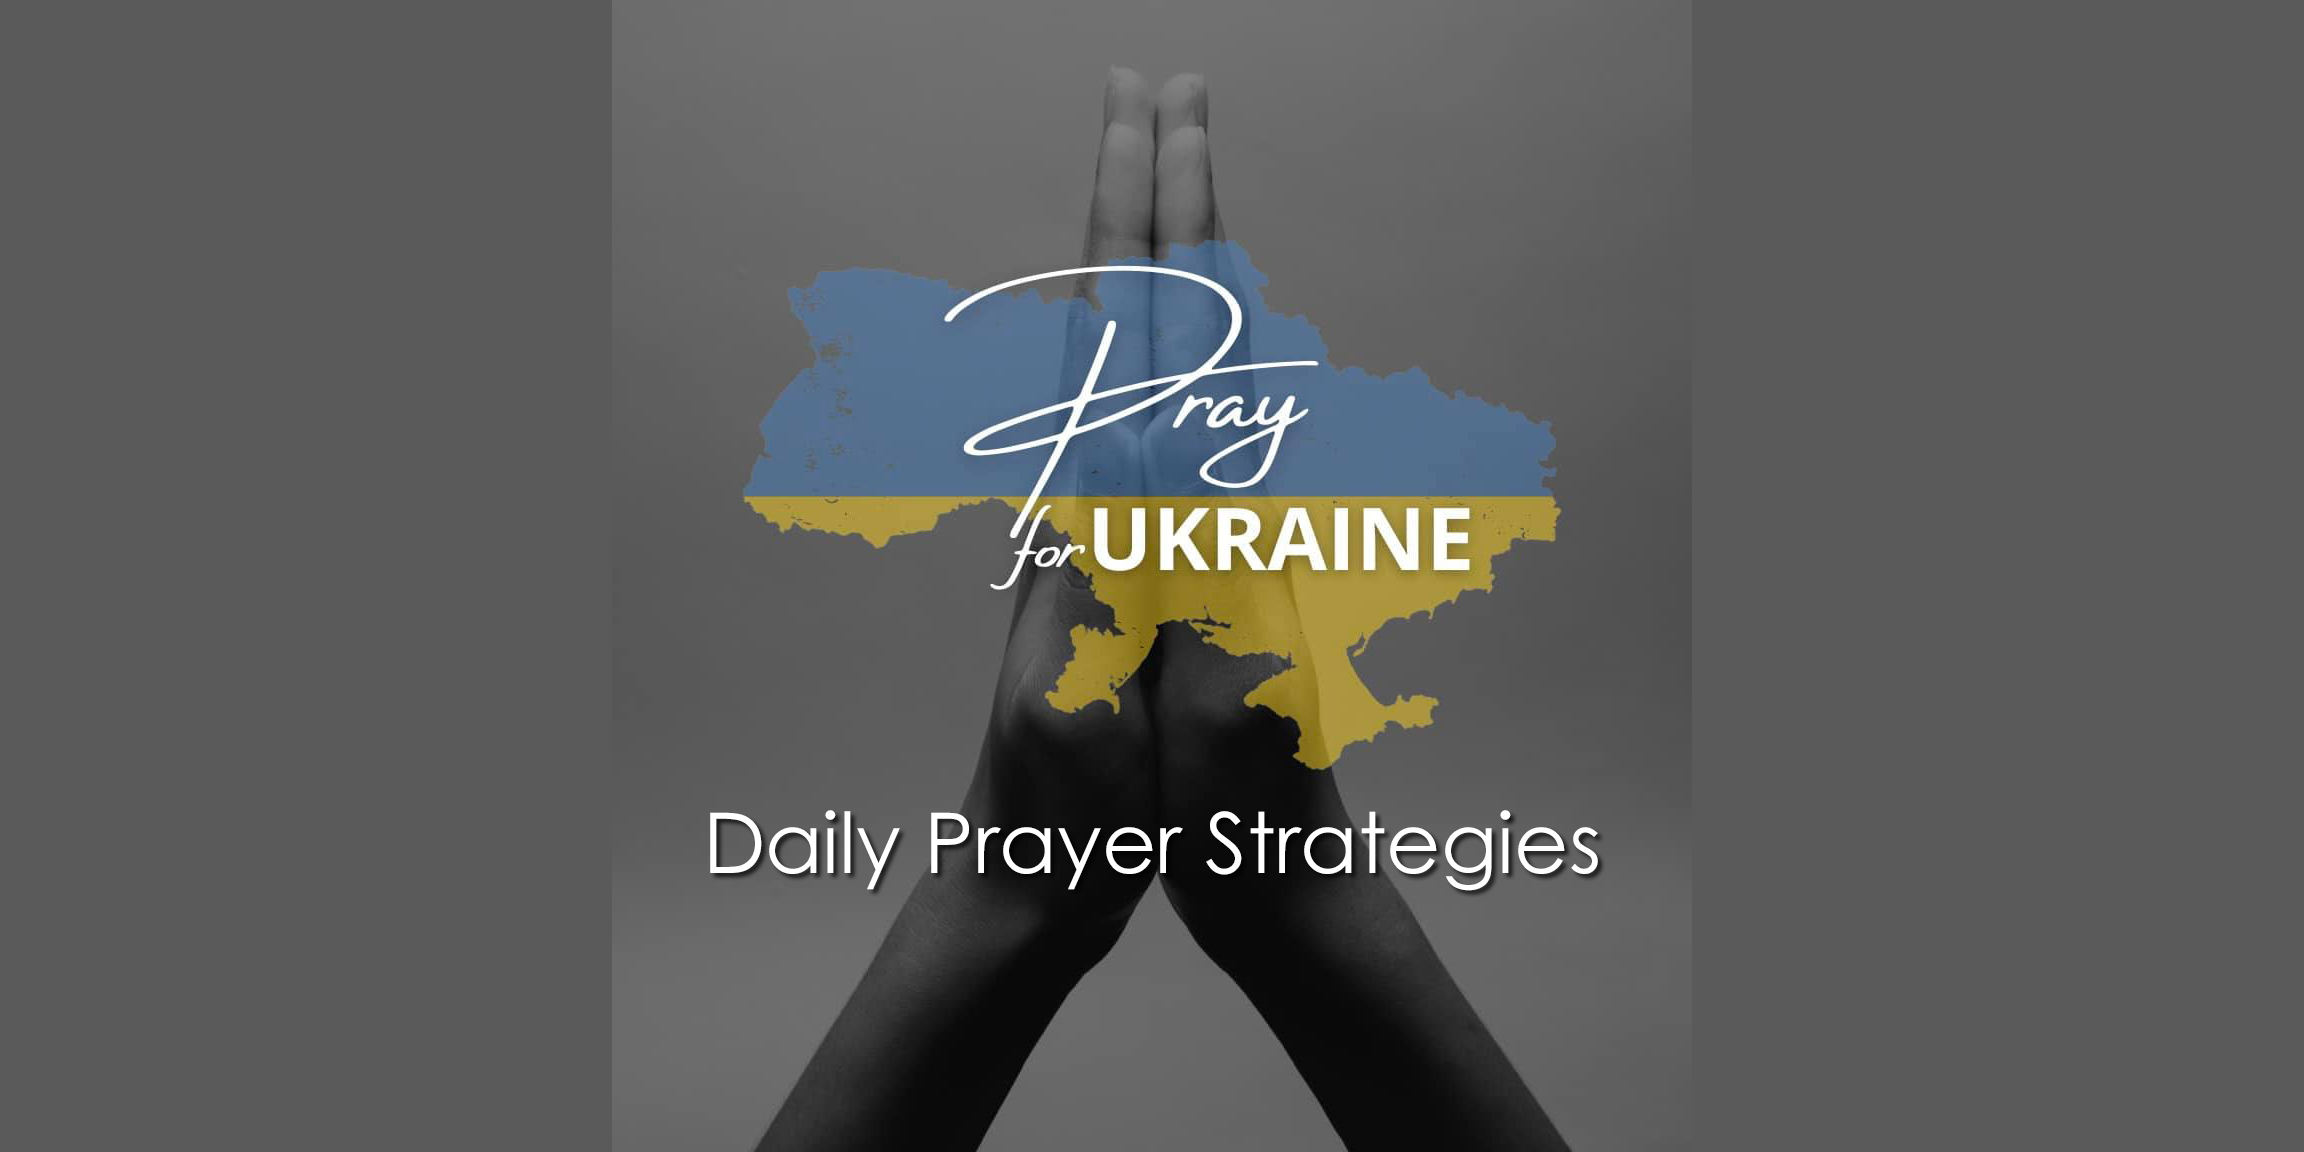 Daily Prayer Strategies for Ukraine